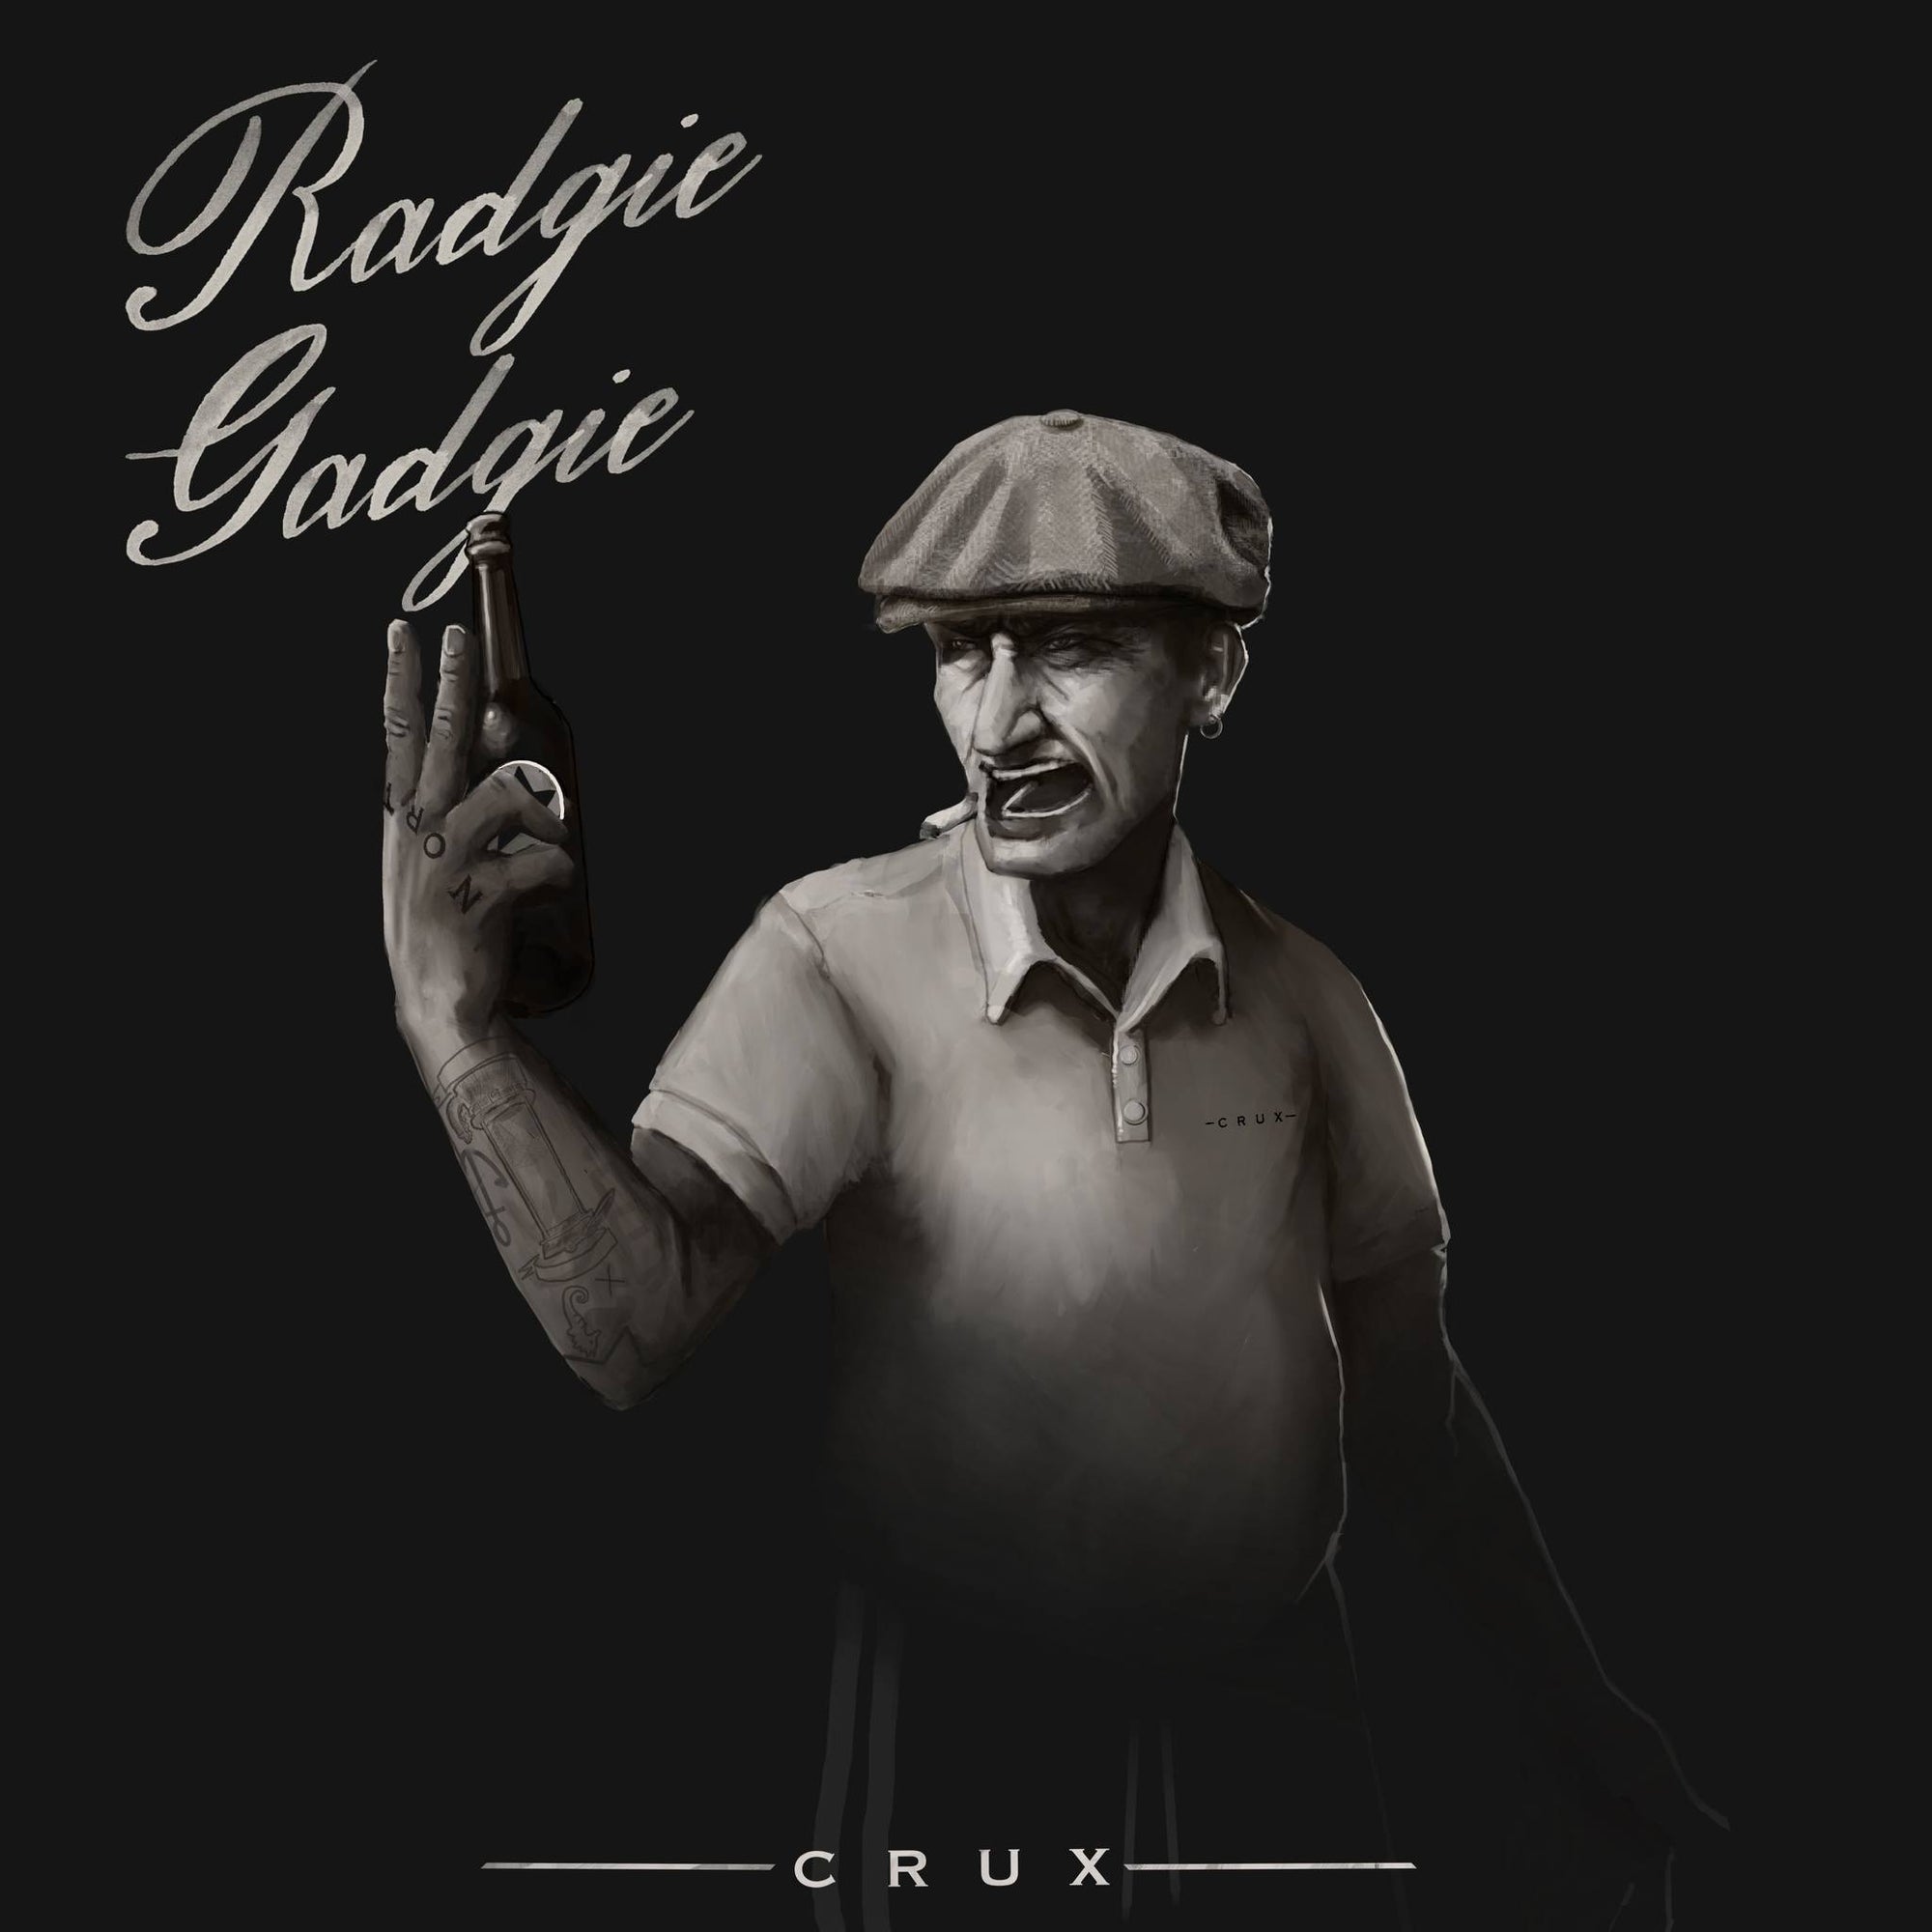 Crux - 'Radgie Gadgie'